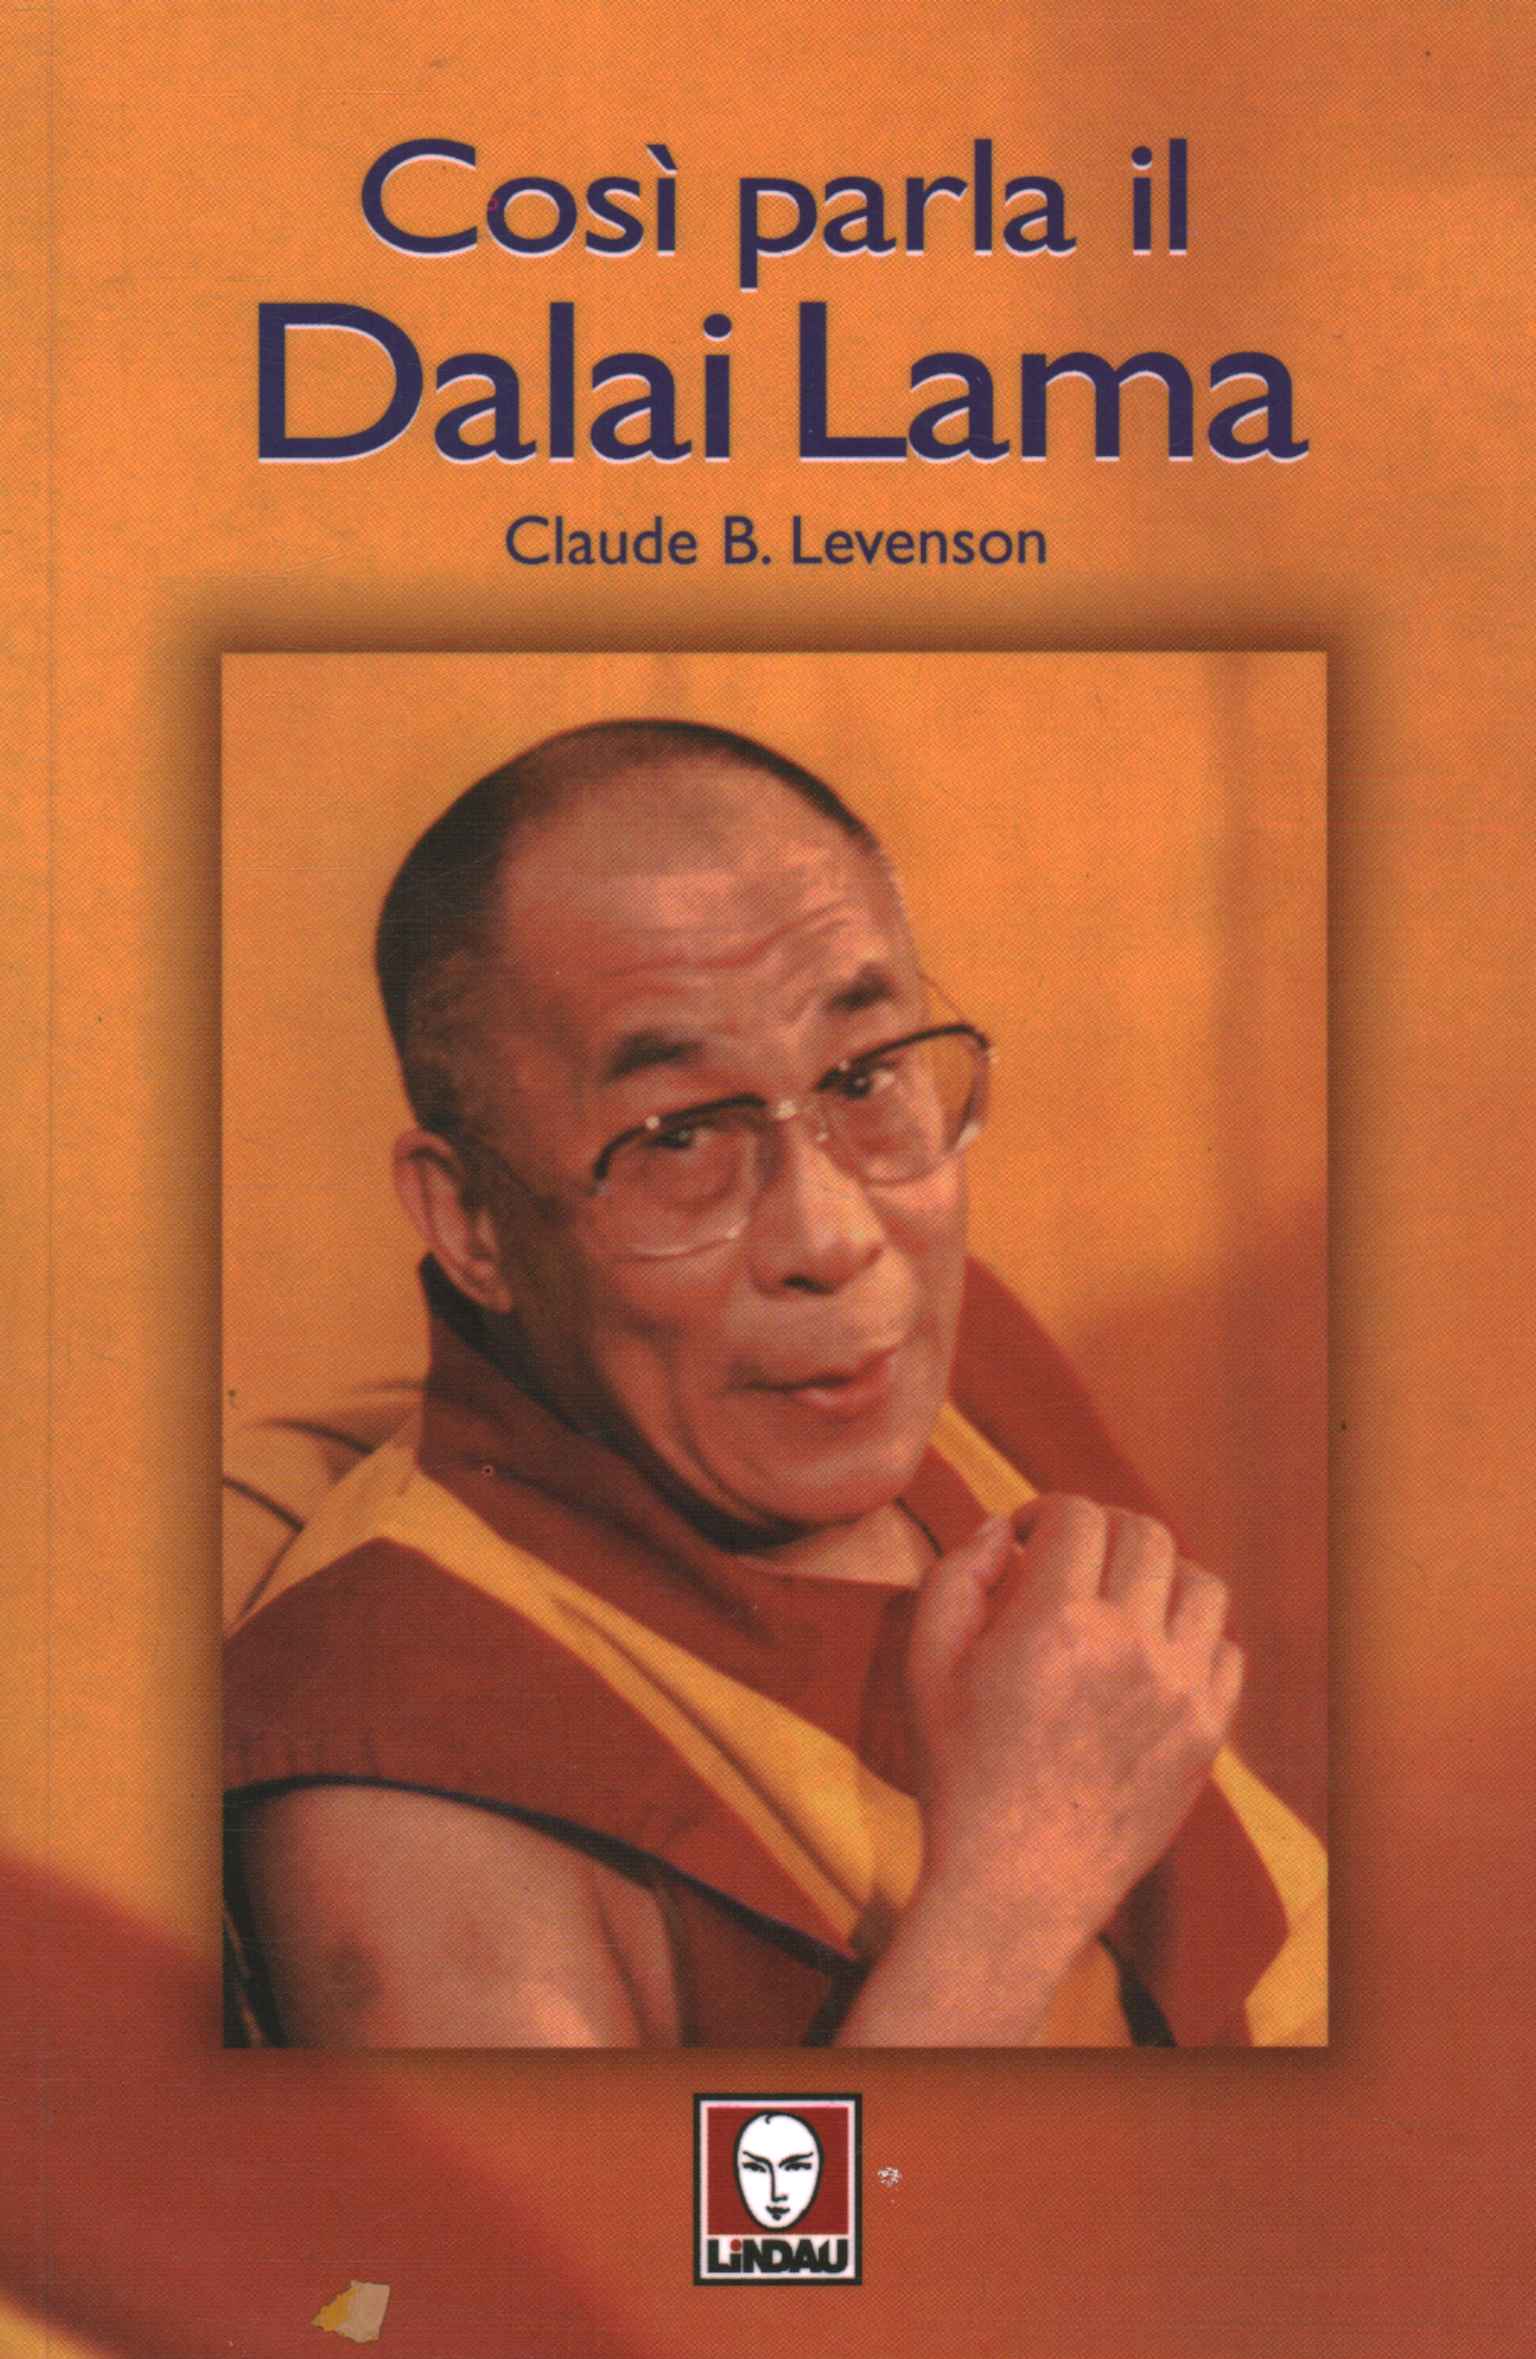 Thus speaks the Dalai Lama